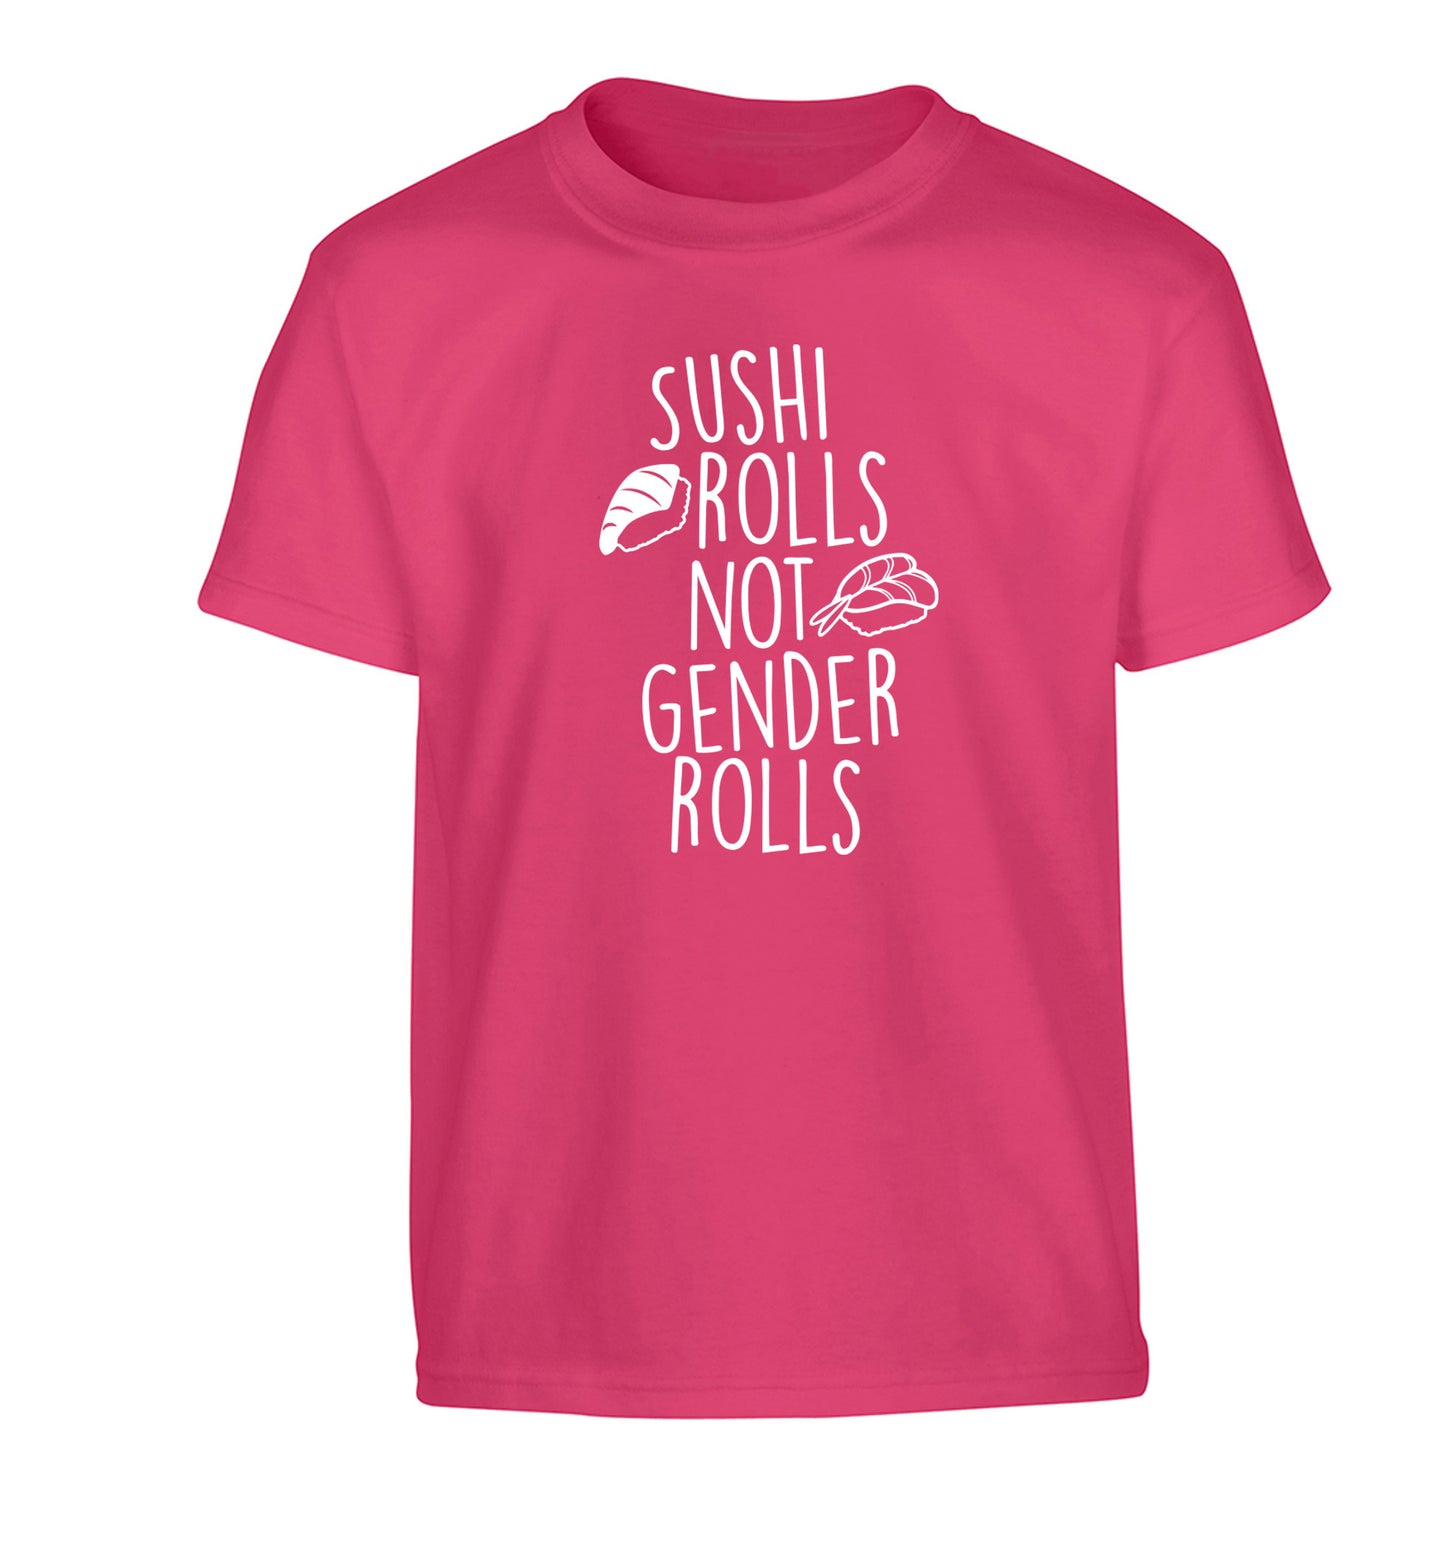 Sushi rolls not gender rolls Children's pink Tshirt 12-14 Years